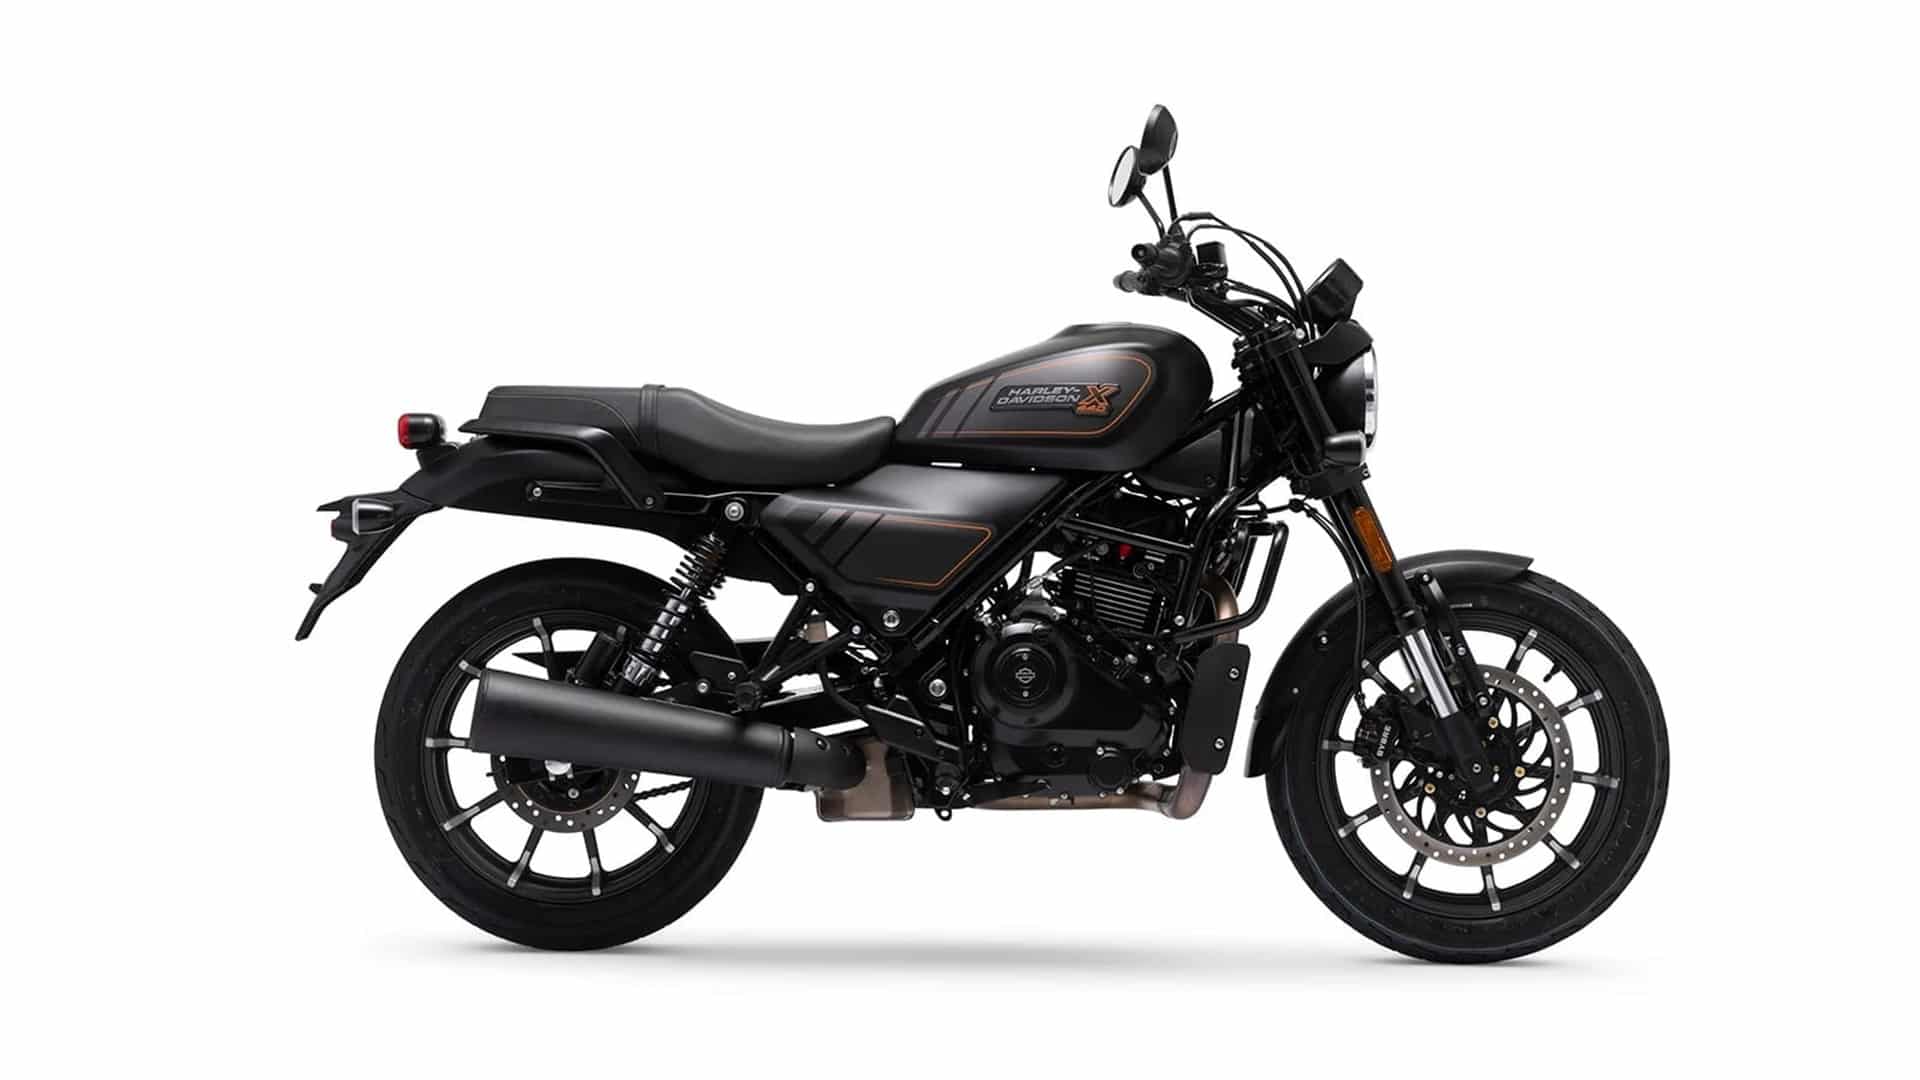 La Harley-Davidson X440 presentada oficialmente en India